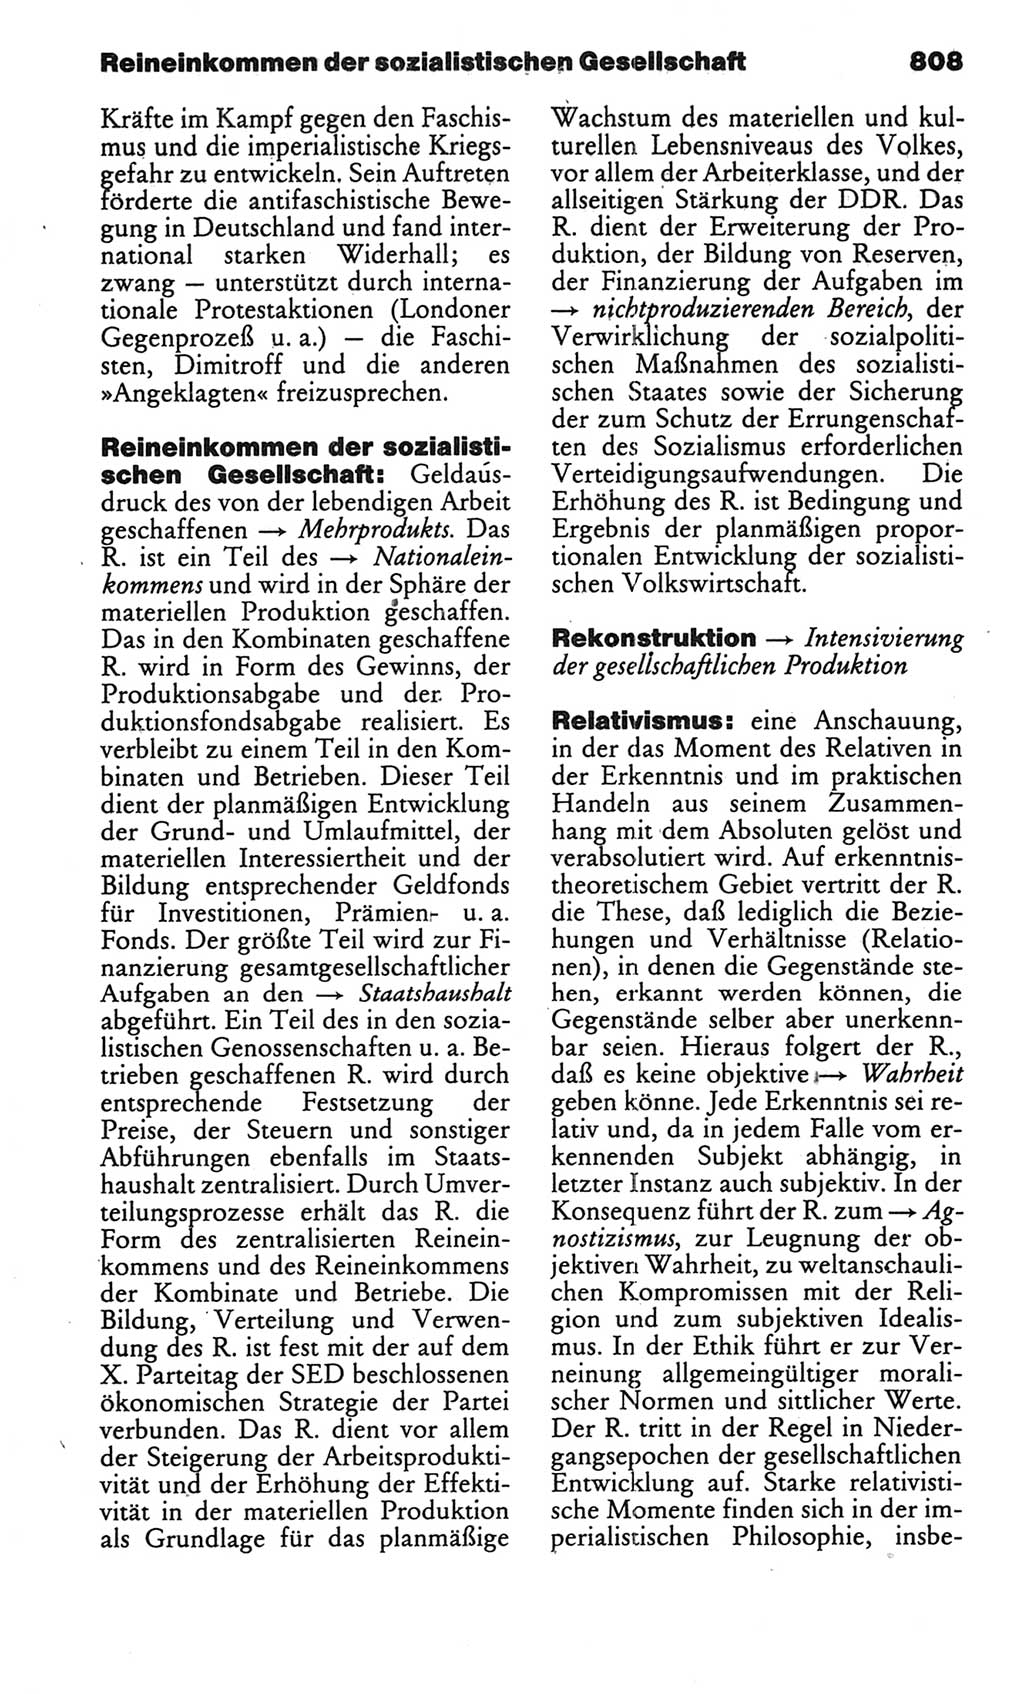 Kleines politisches Wörterbuch [Deutsche Demokratische Republik (DDR)] 1986, Seite 808 (Kl. pol. Wb. DDR 1986, S. 808)